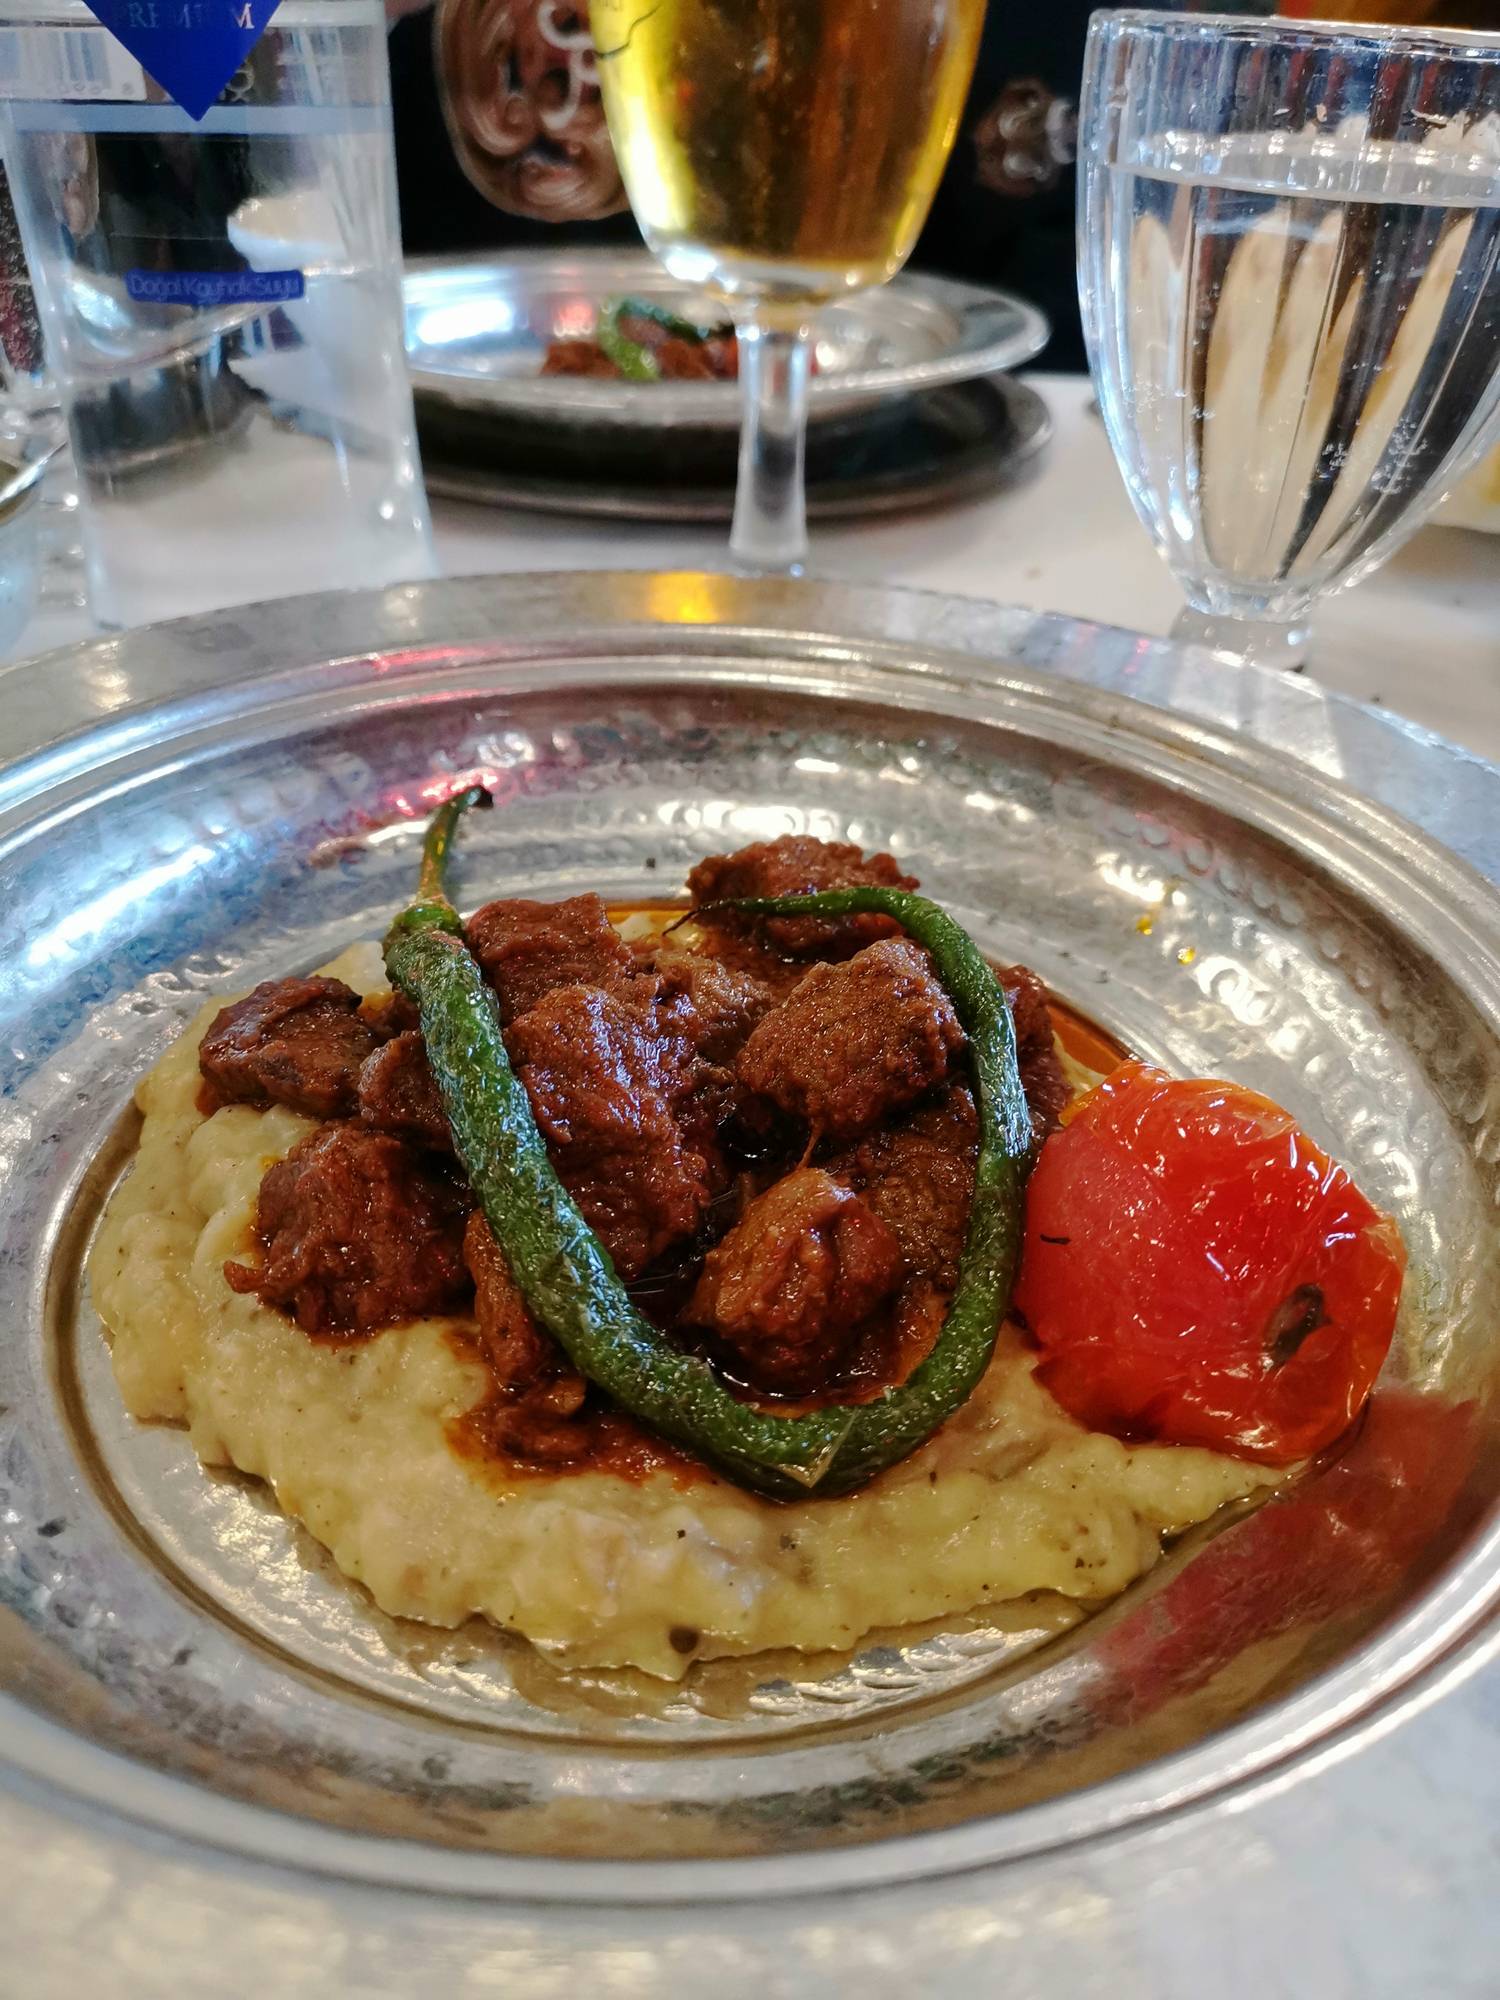 A Deraliye étteremben felszolgált marhapörkölt hasonló, mint az itthon megszokott. Isztambulban padlizsánpürén tálalták.